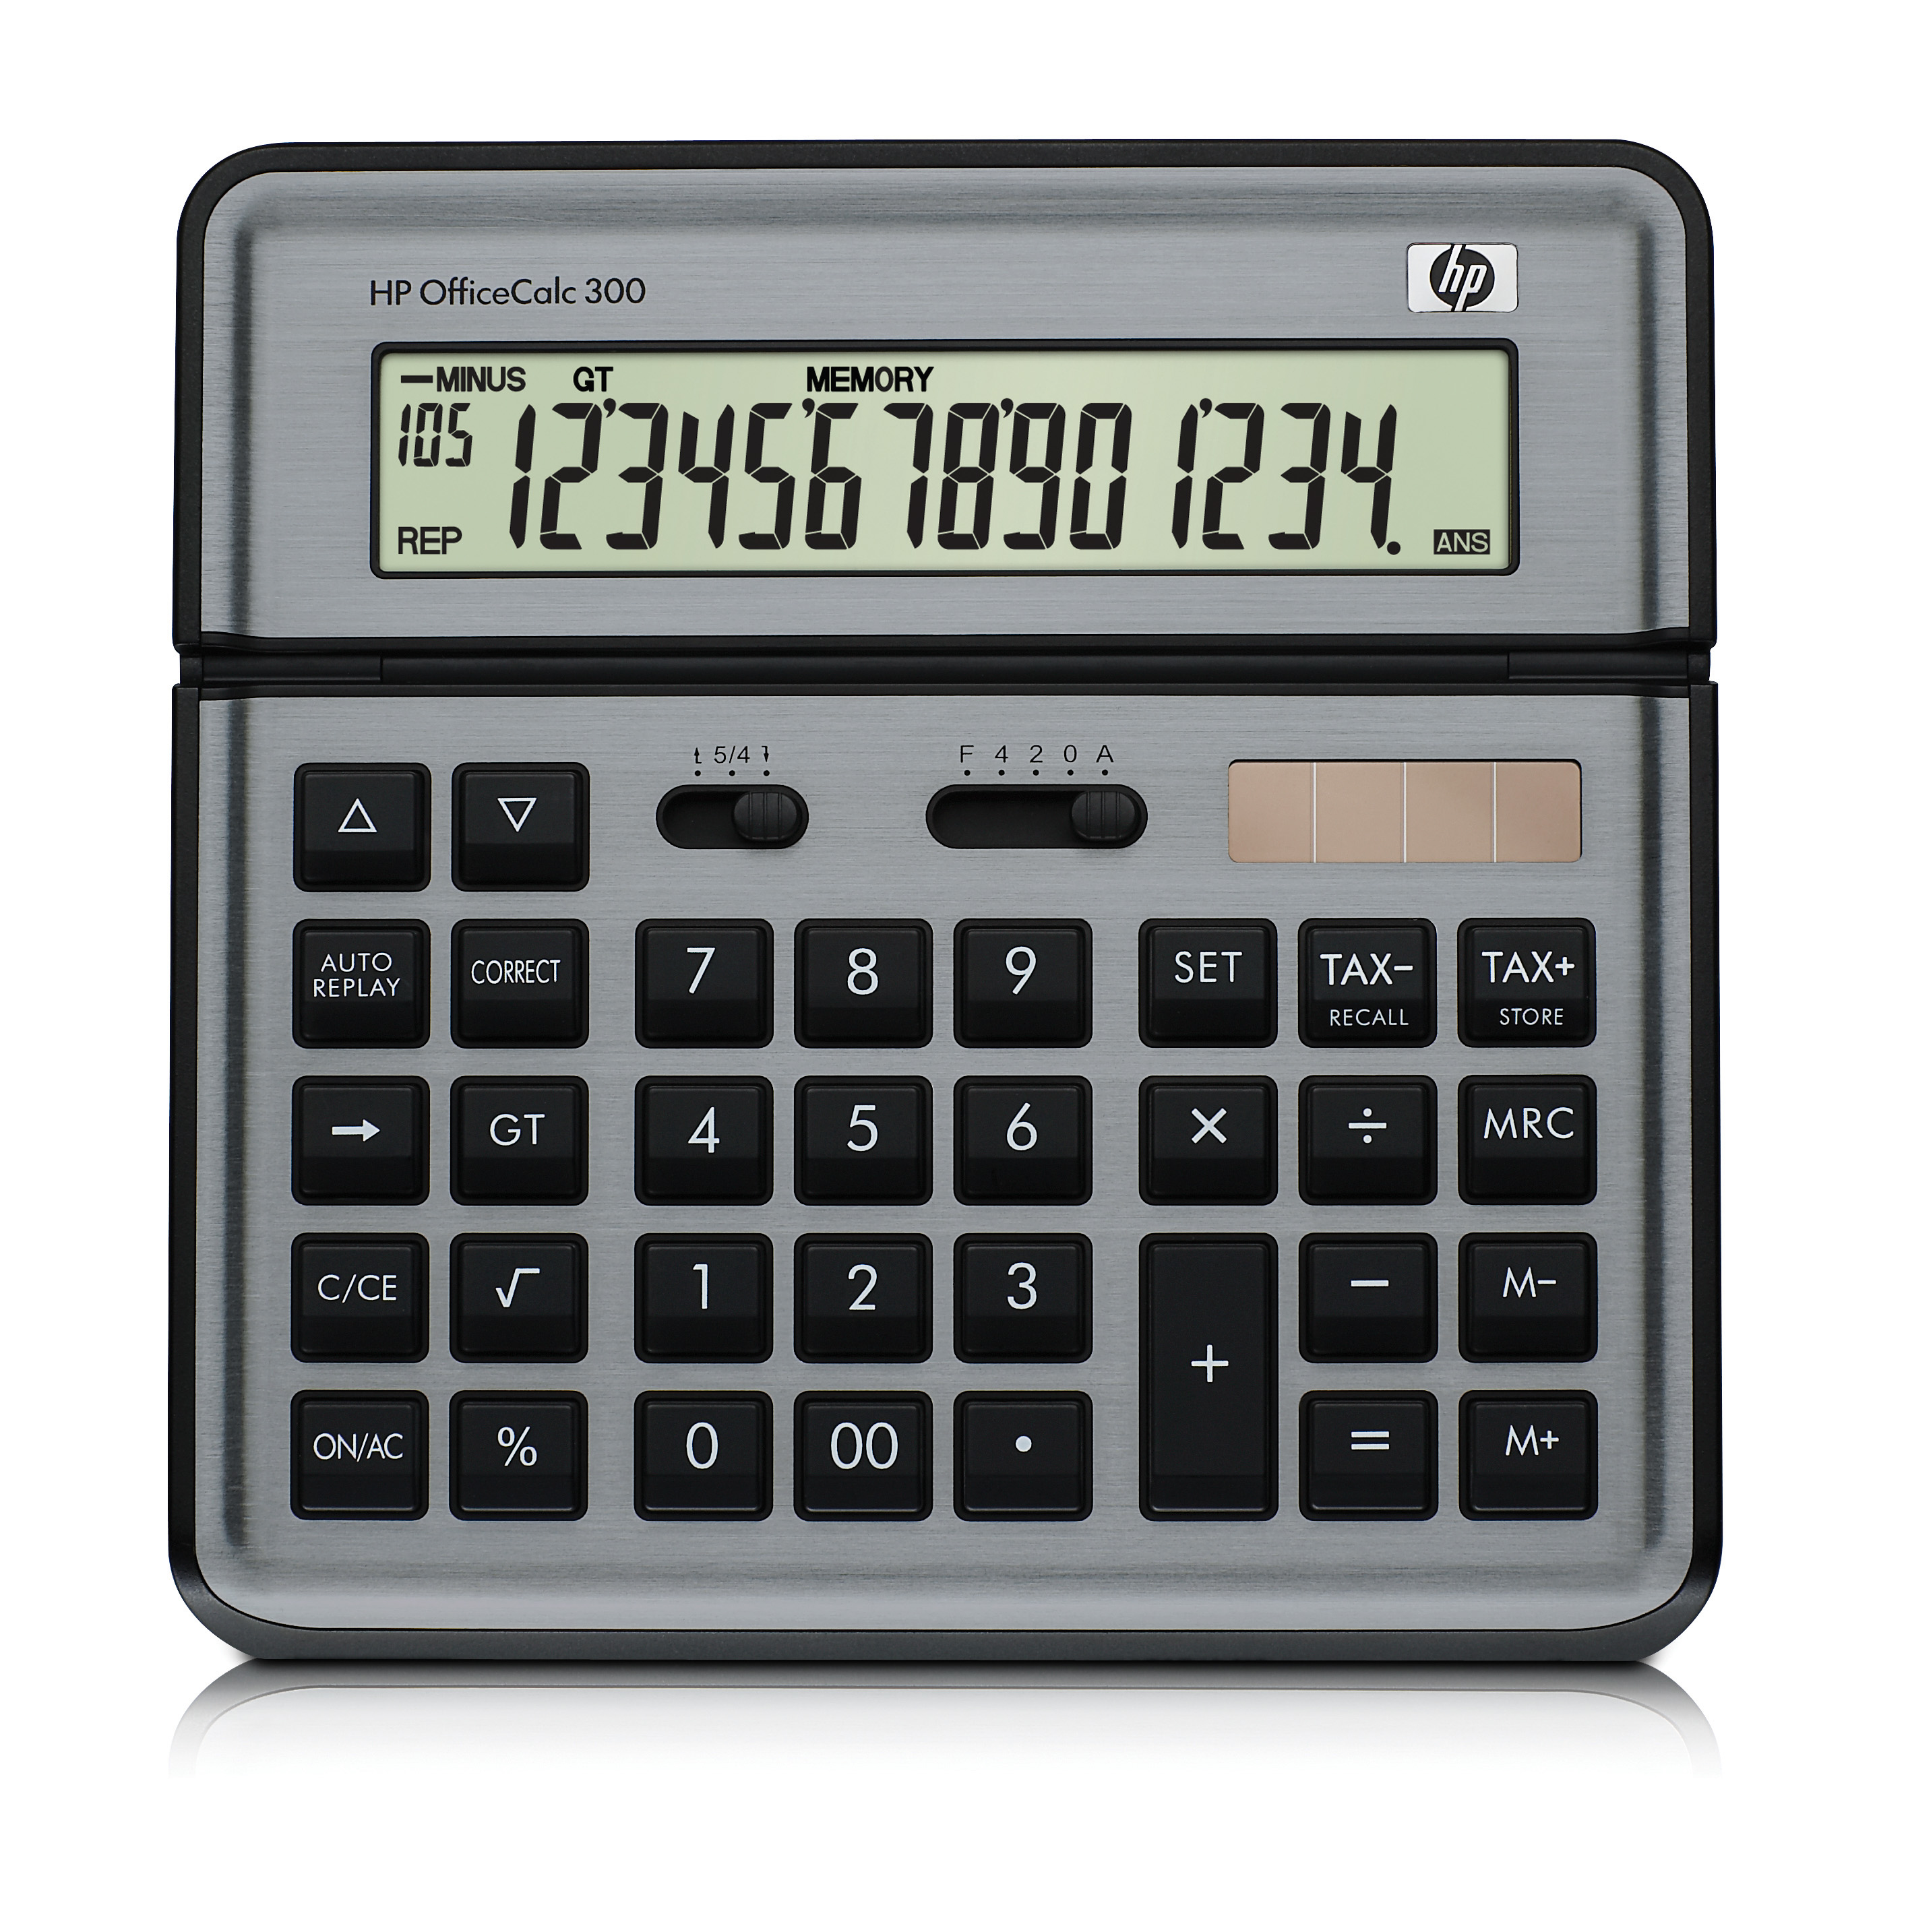 HP OfficeCalc 300 14-stelliges BIG LC-Display F2238AA Tisch/Taschenrechner 